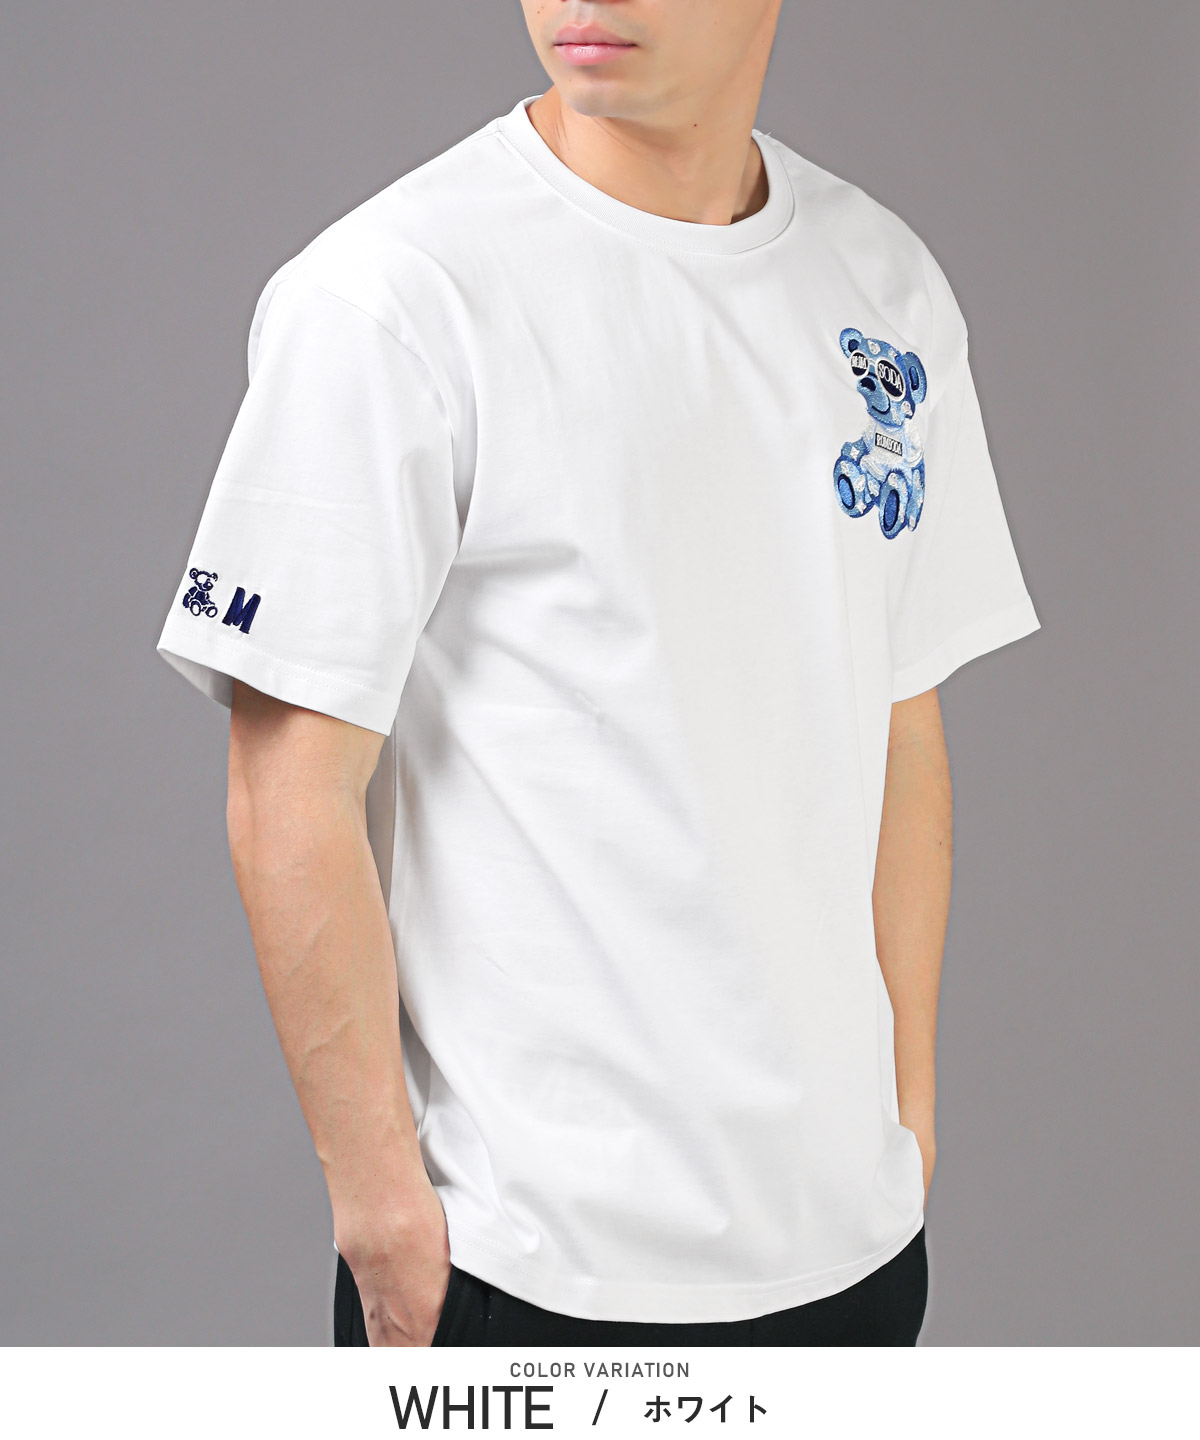 Tシャツ メンズ 半袖 ベア 刺繍 ロゴ ビッグシルエット テディベア クルーネック 白 黒